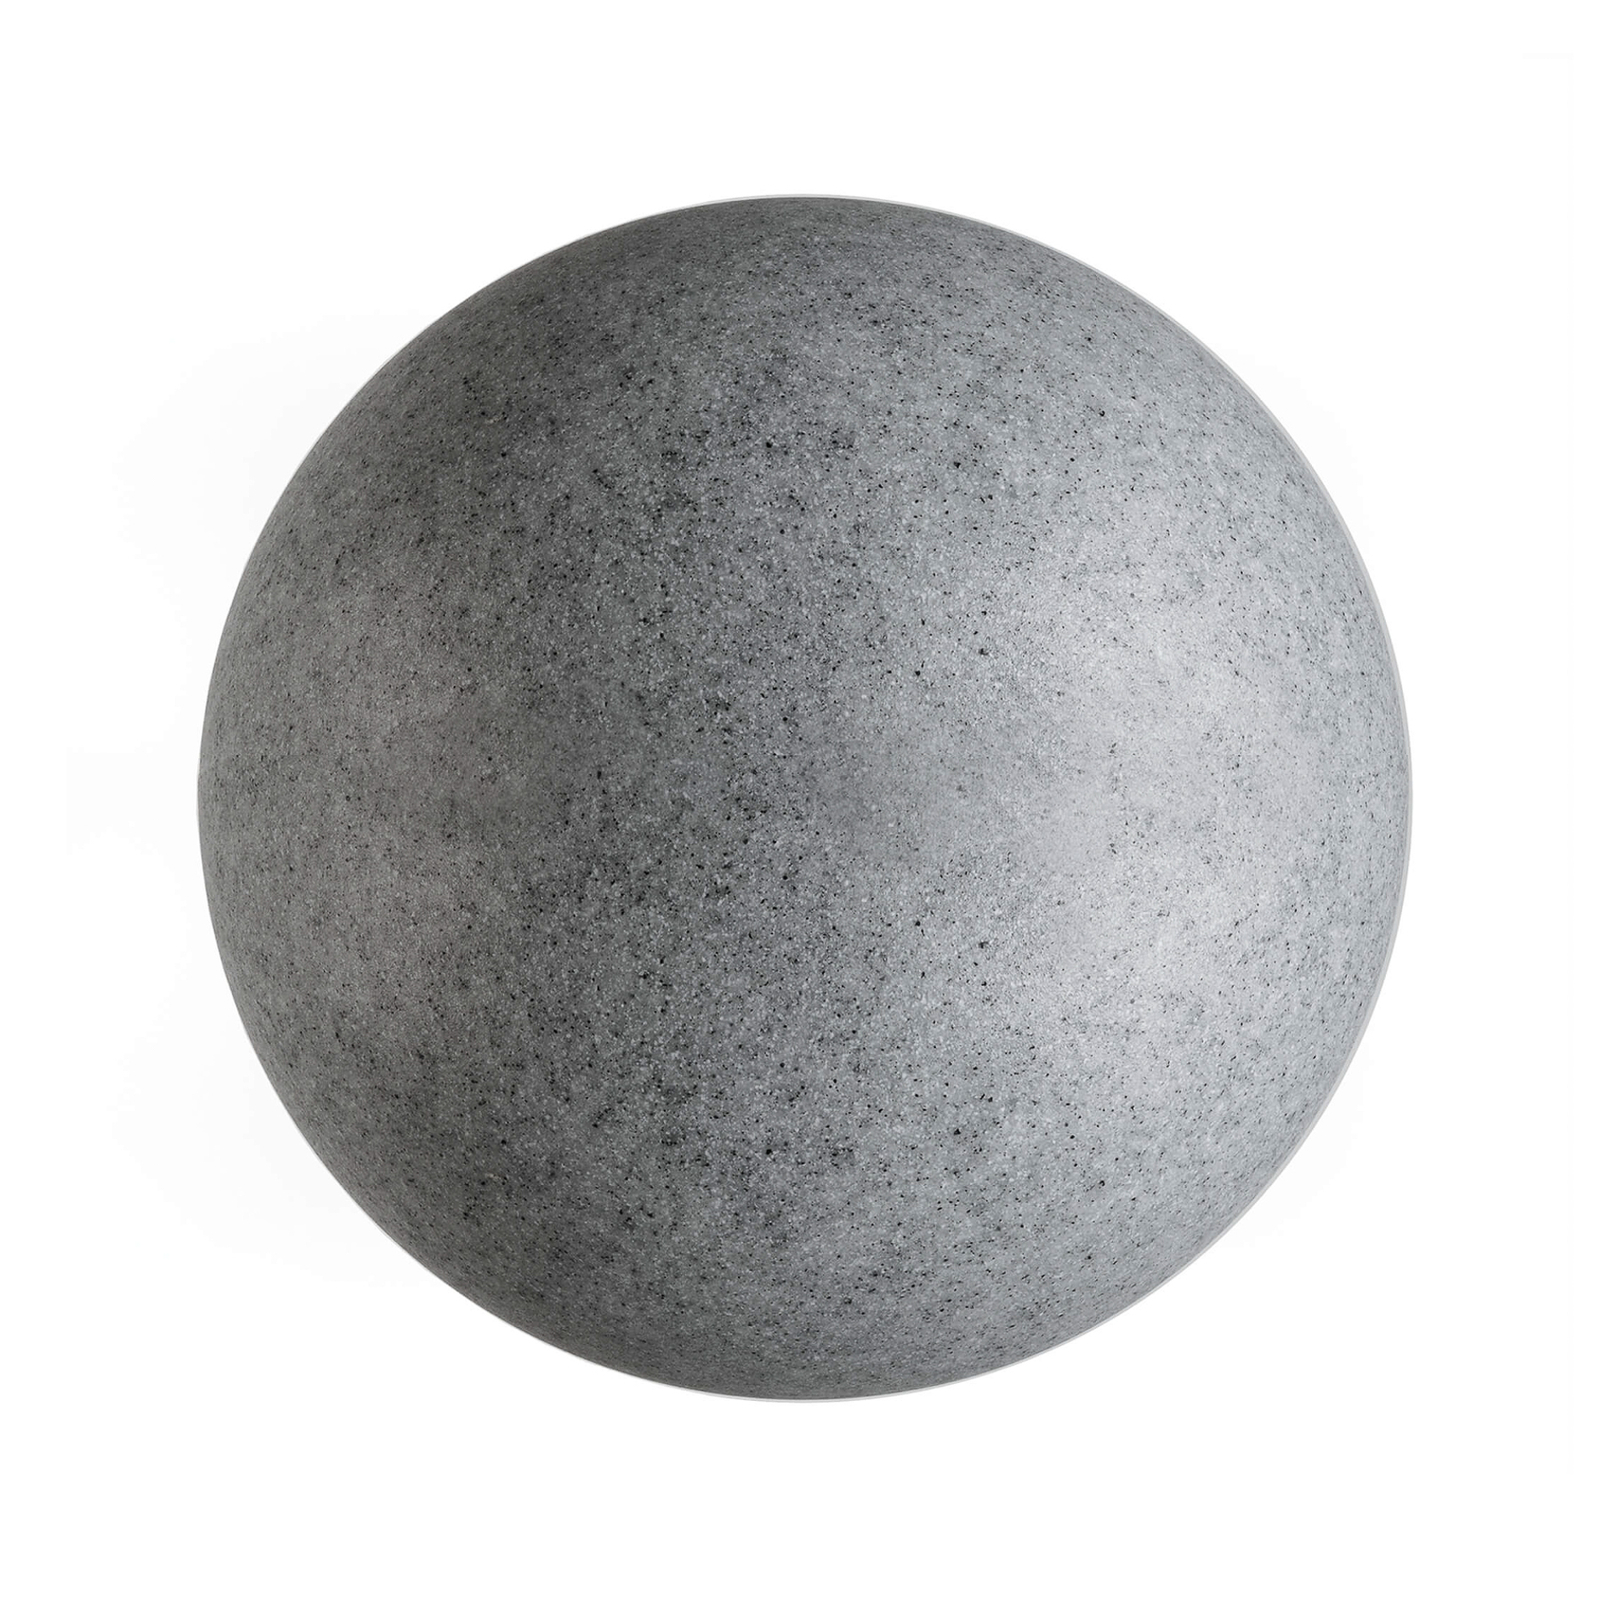 Kültéri gömblámpa földbe sz., gránit, Ø 45 cm